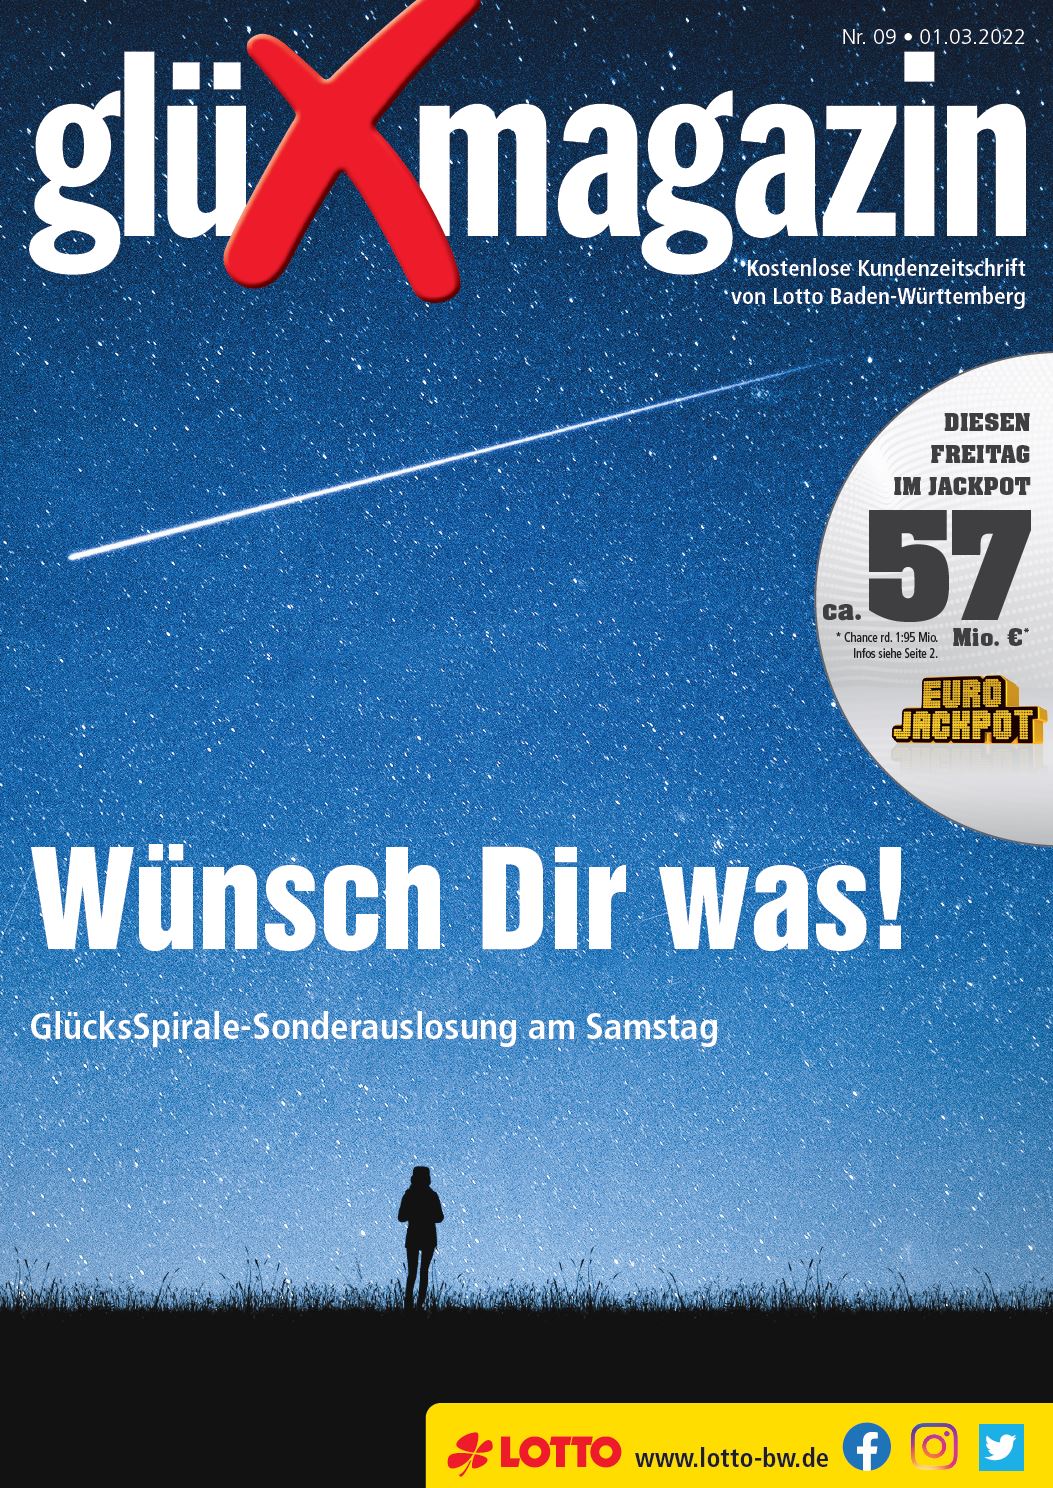 glüXmagazin Ausgabe 09/2022